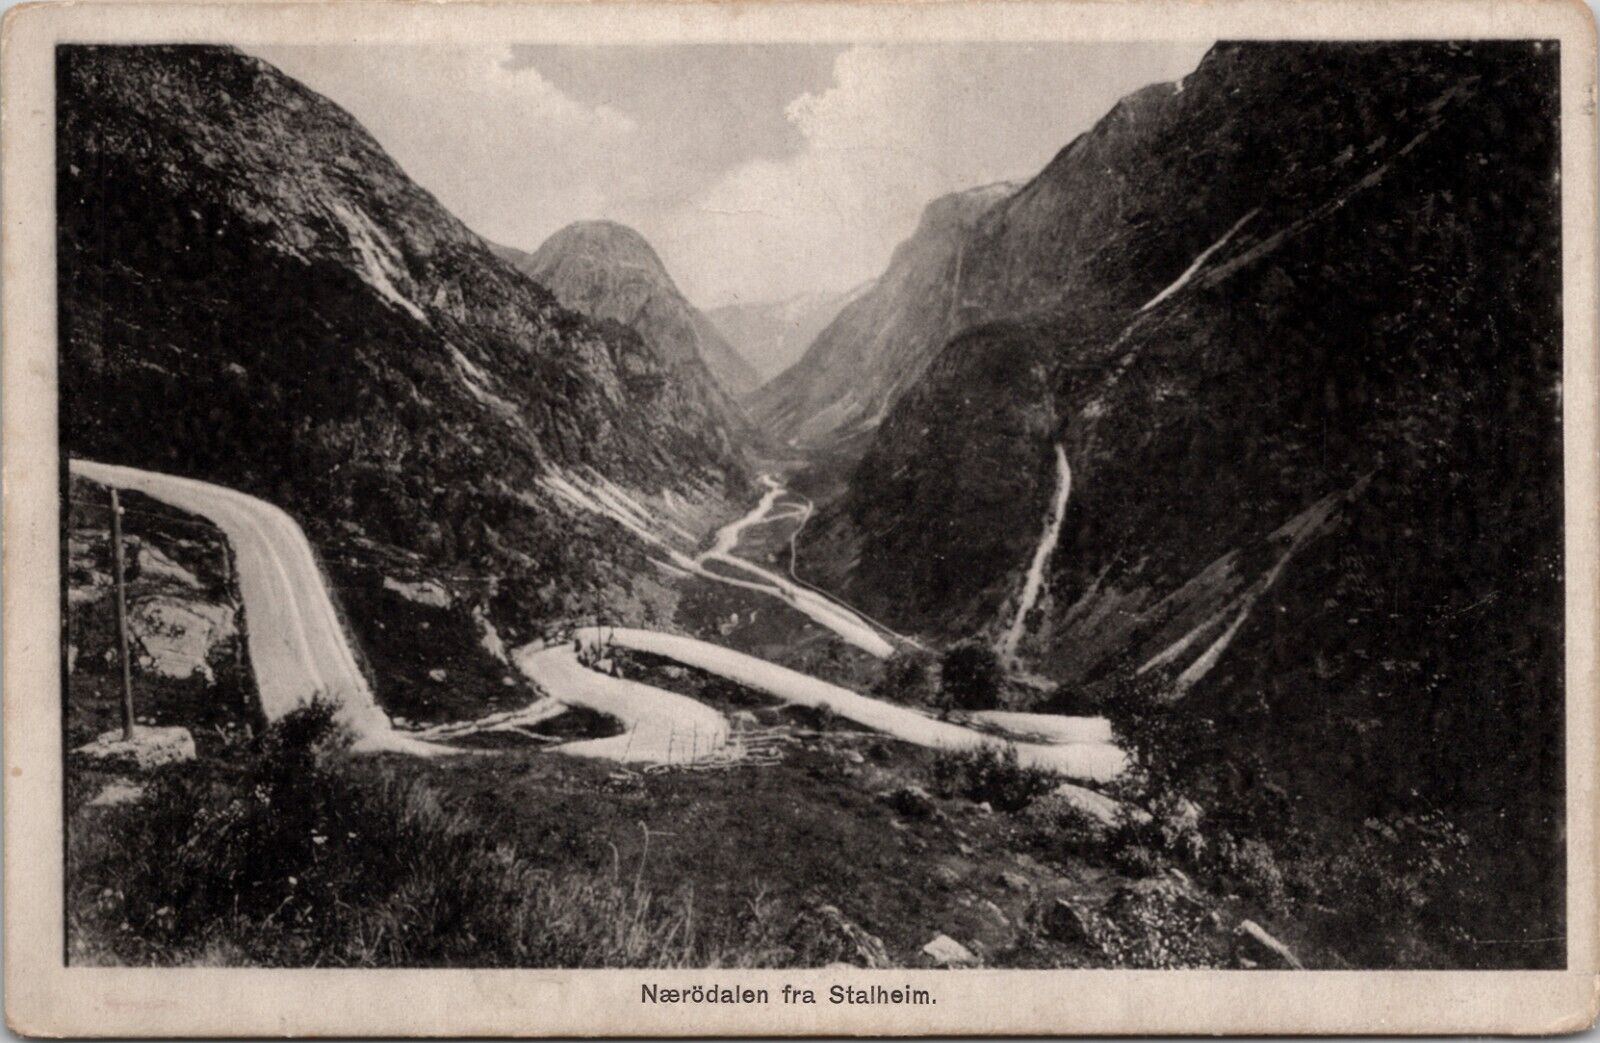 Naerodalen fra Stalheim Norway Vintage Postcard Wps1